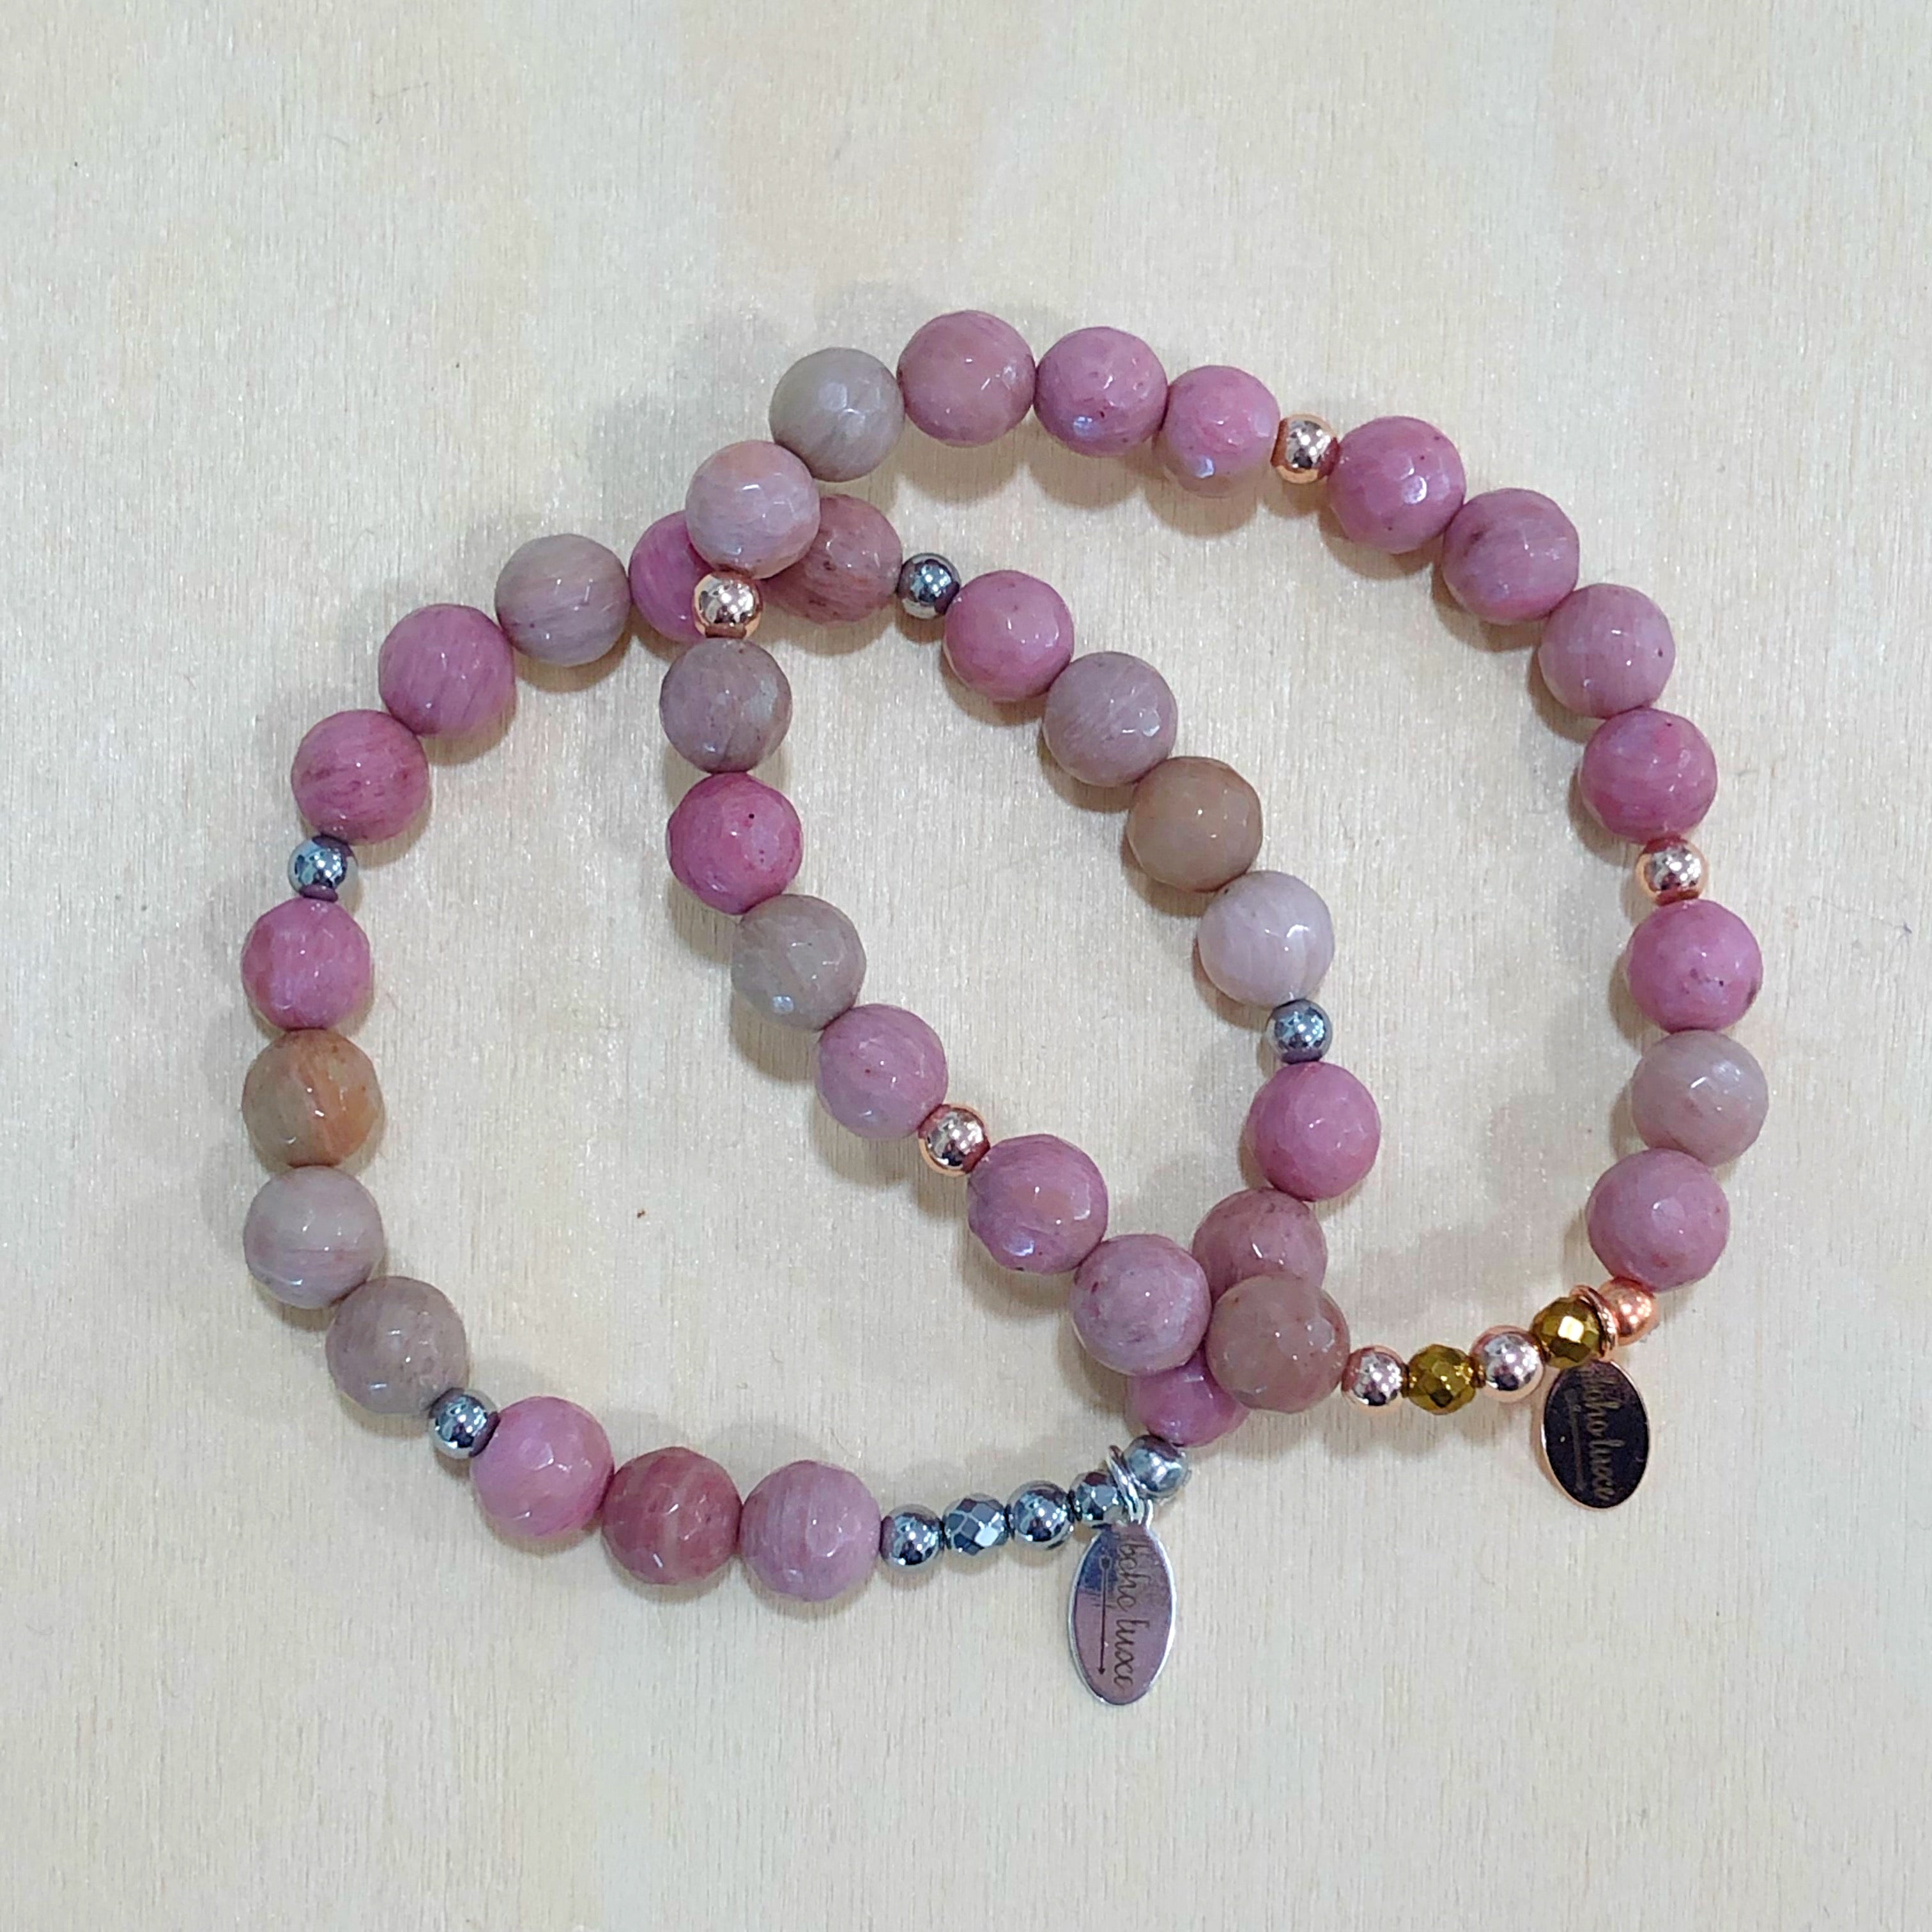 The Cora - Rhodonite semi-precious beads